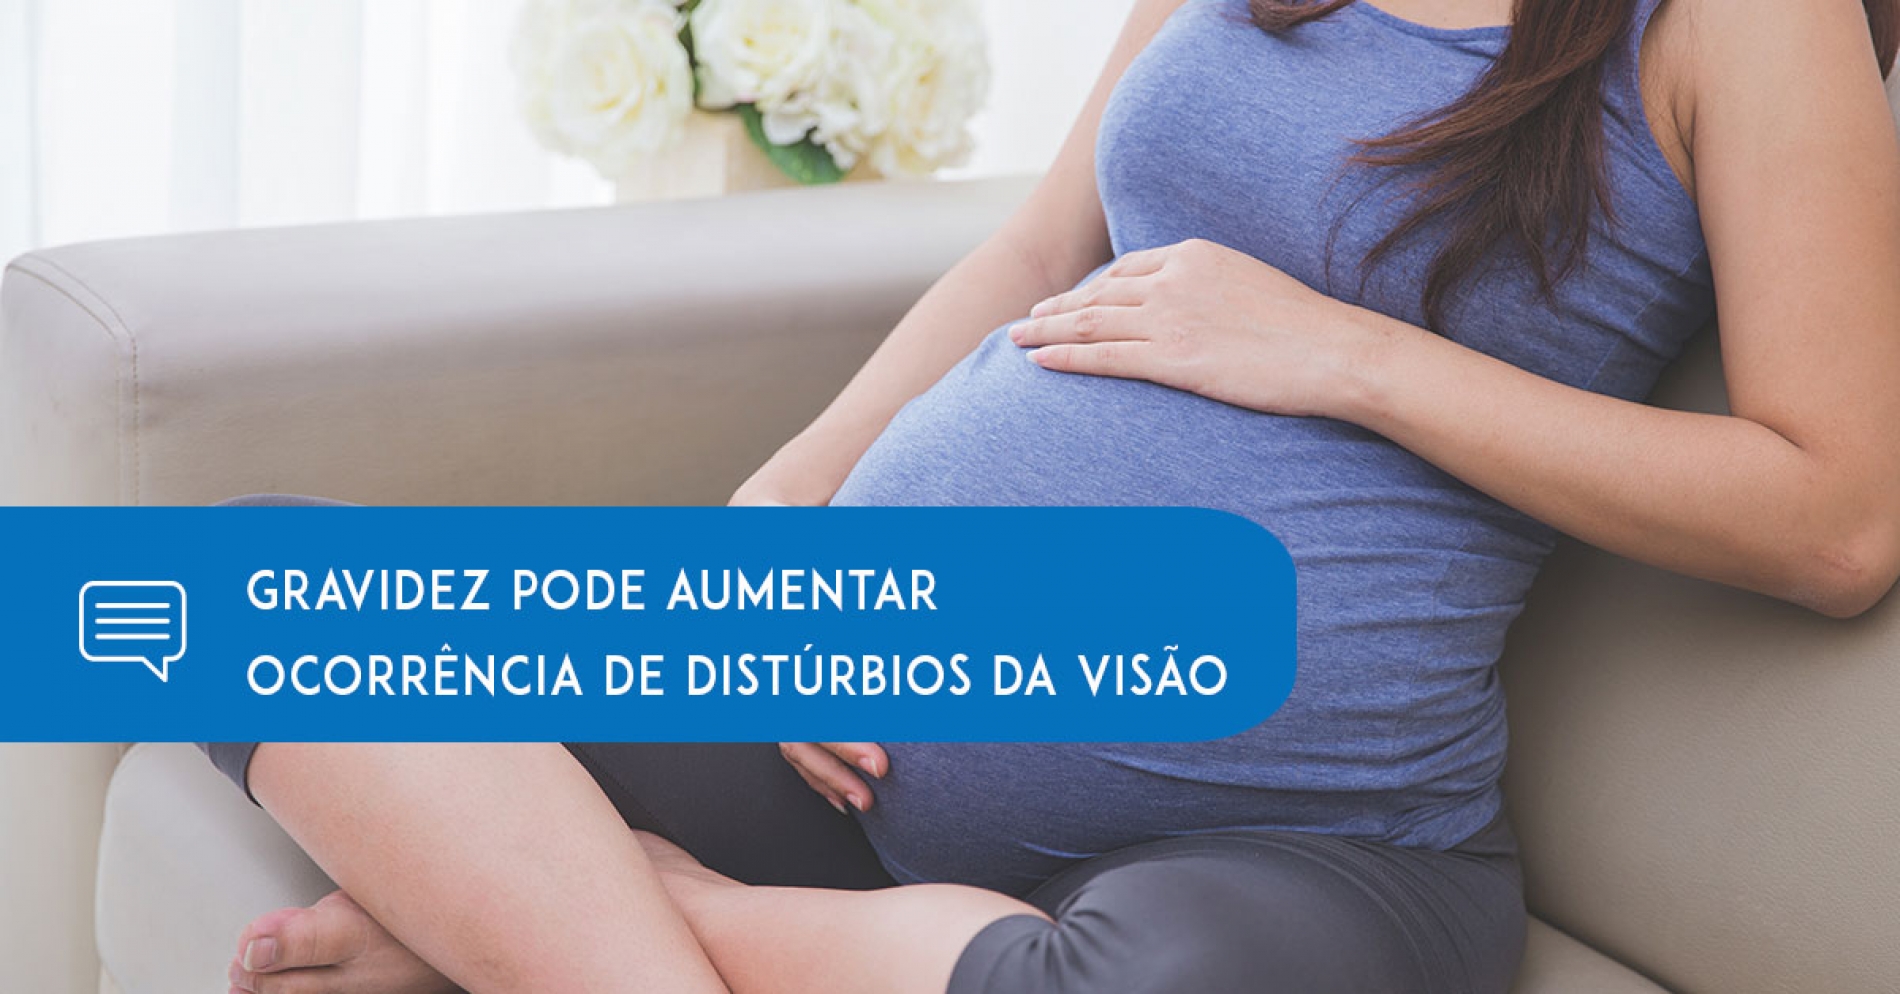 Mês das Mães - Gravidez pode aumentar ocorrência de distúrbios da visão - Eduardo Paulino